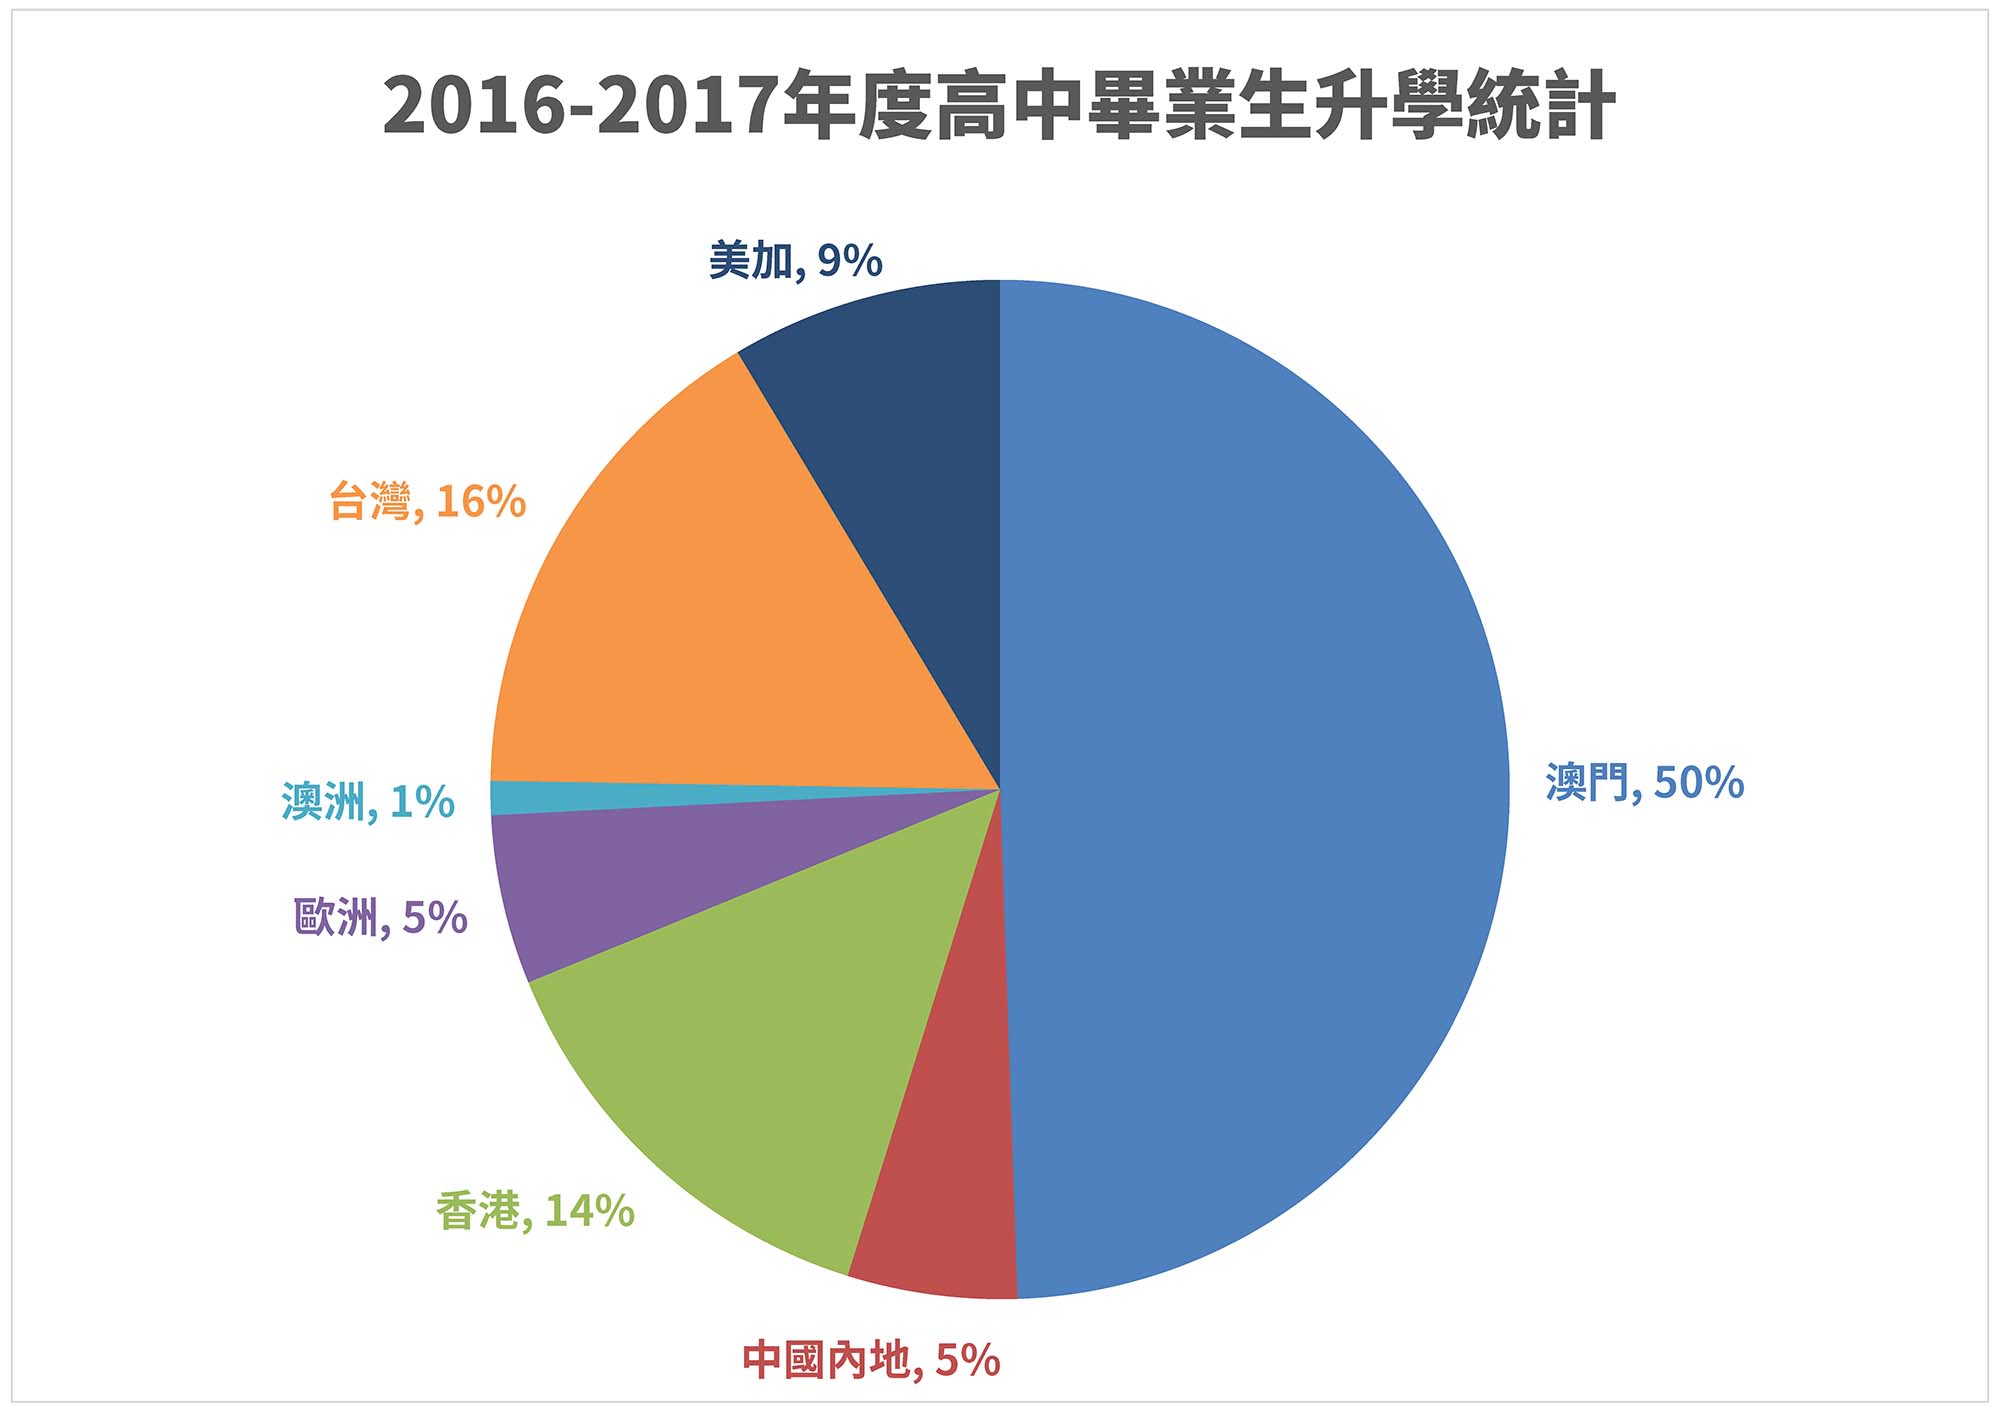 2016-2017 (中).jpg